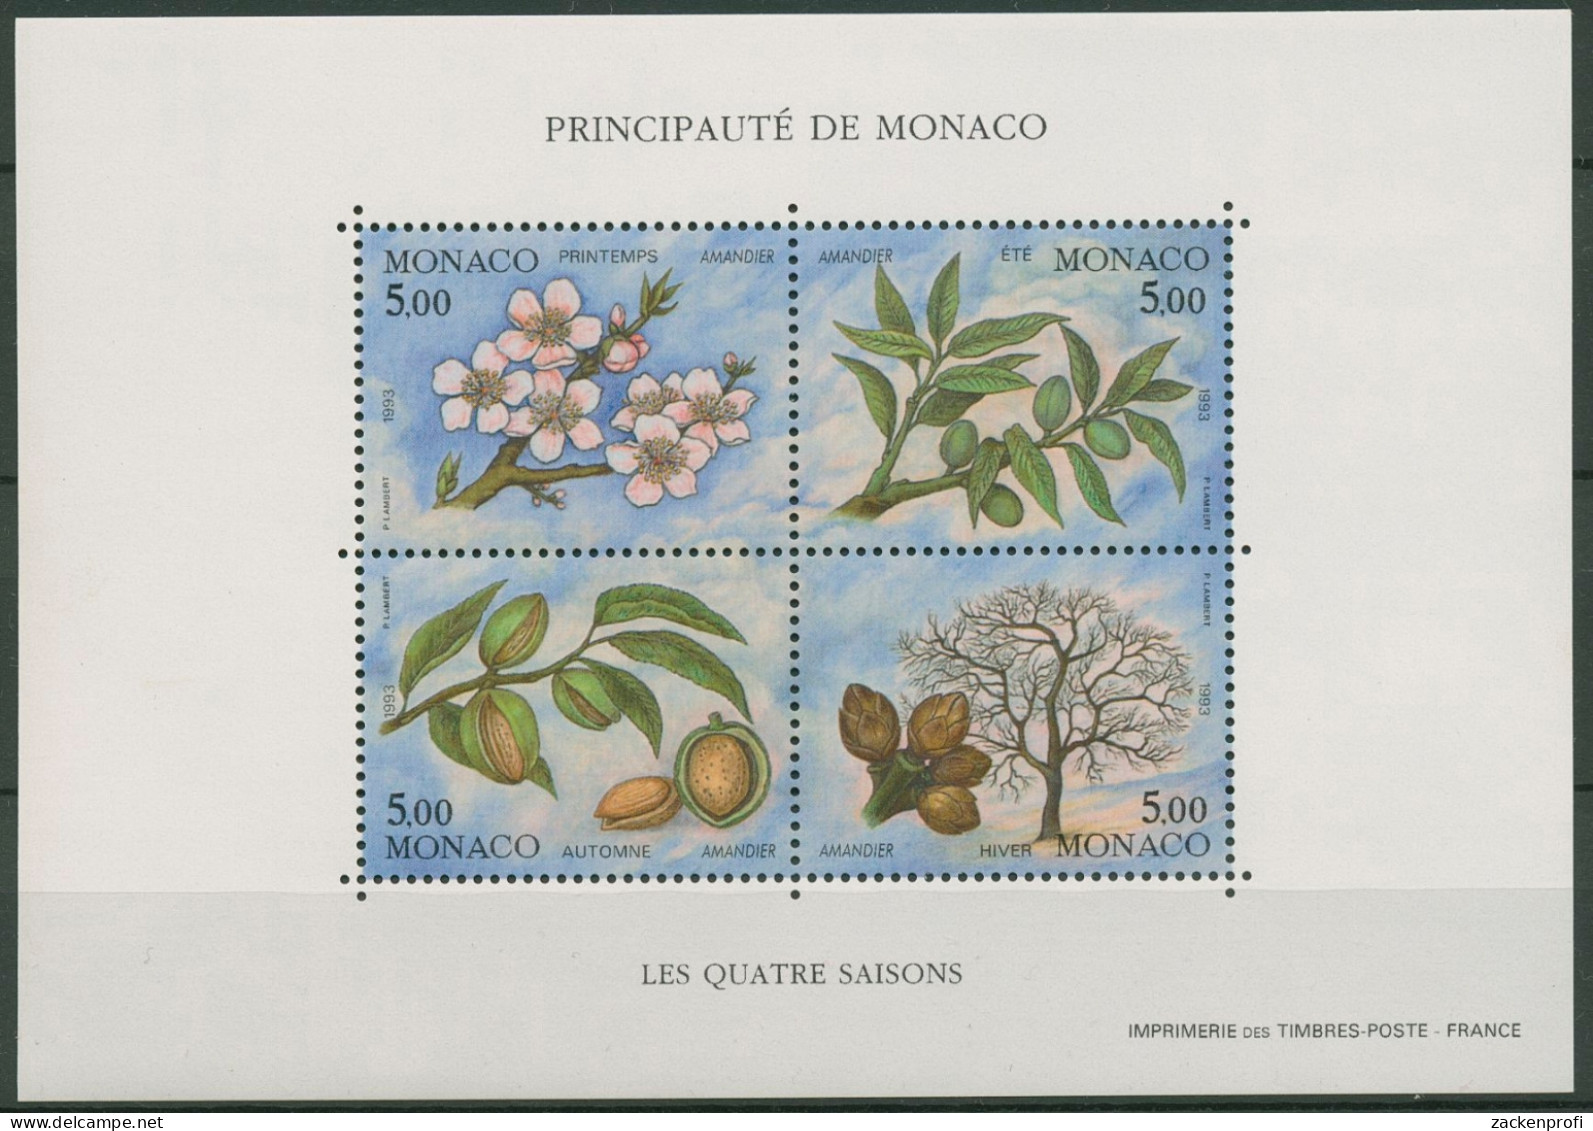 Monaco 1993 Vier Jahreszeiten Mandelbaum Block 57 Postfrisch (C91324) - Bloques